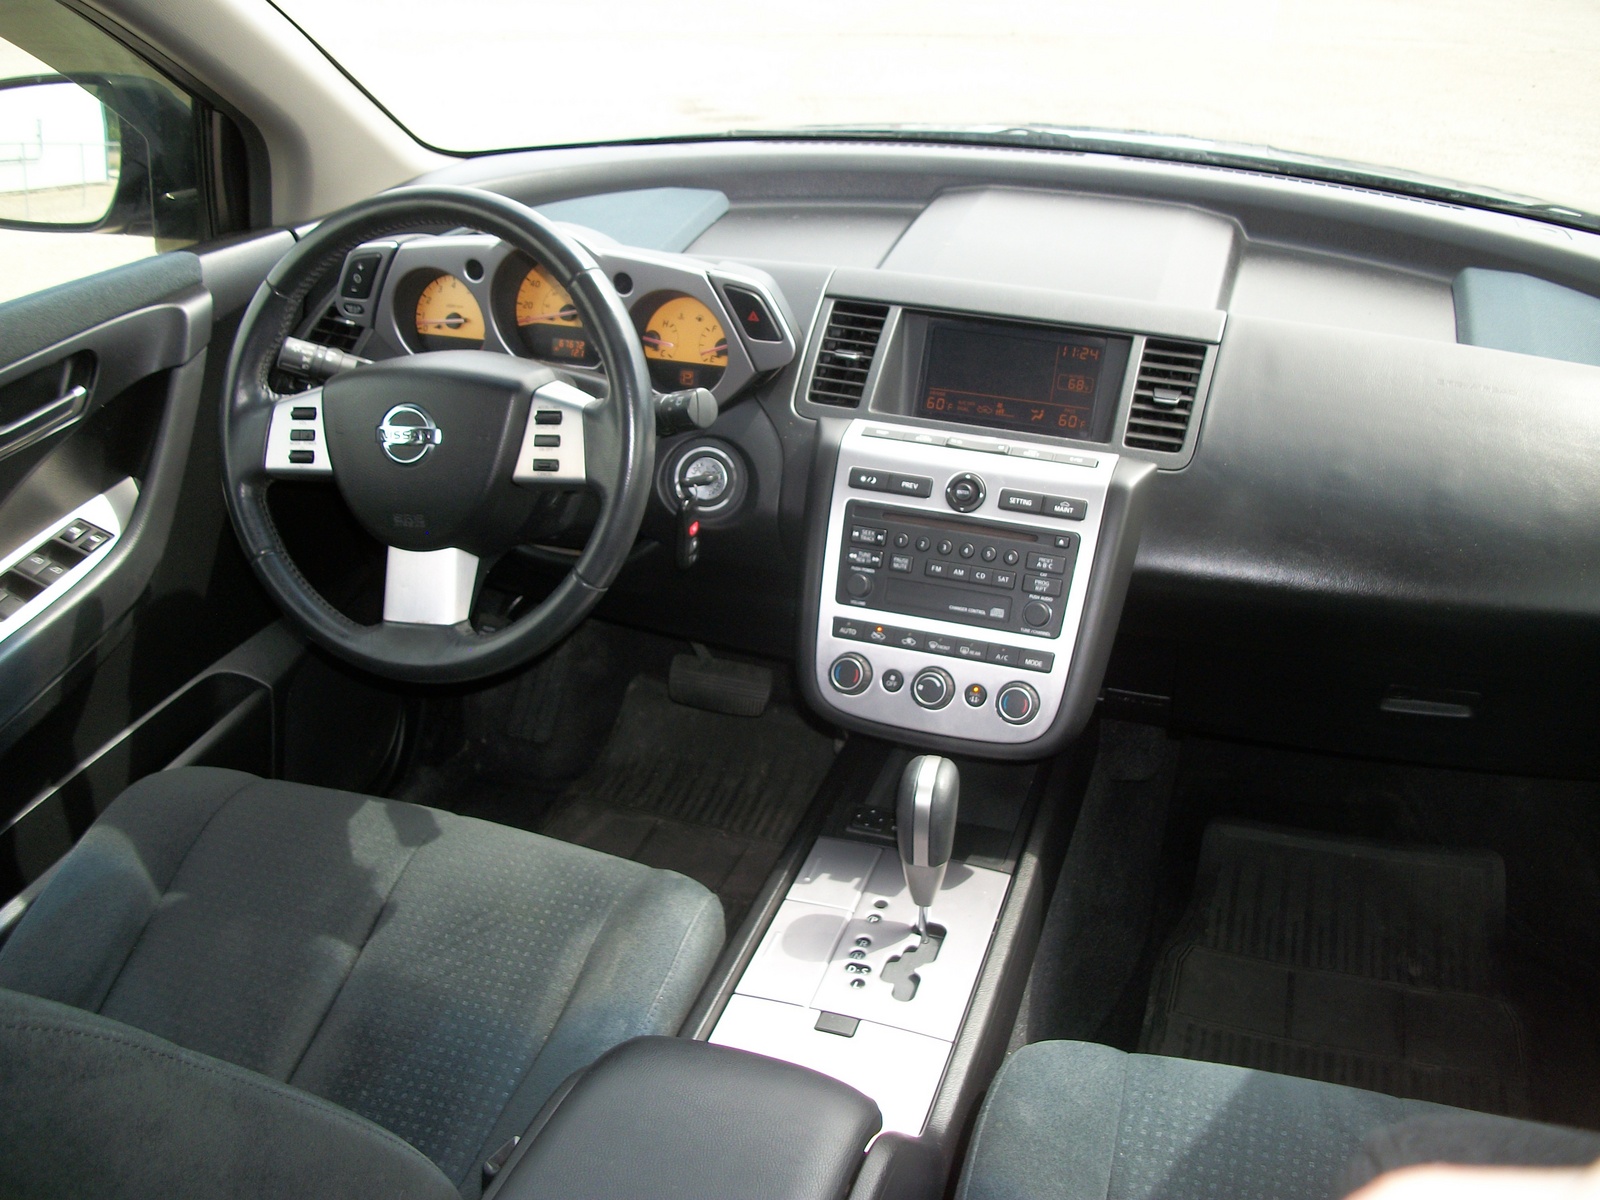 2005 Nissan murano interior dimensions #6